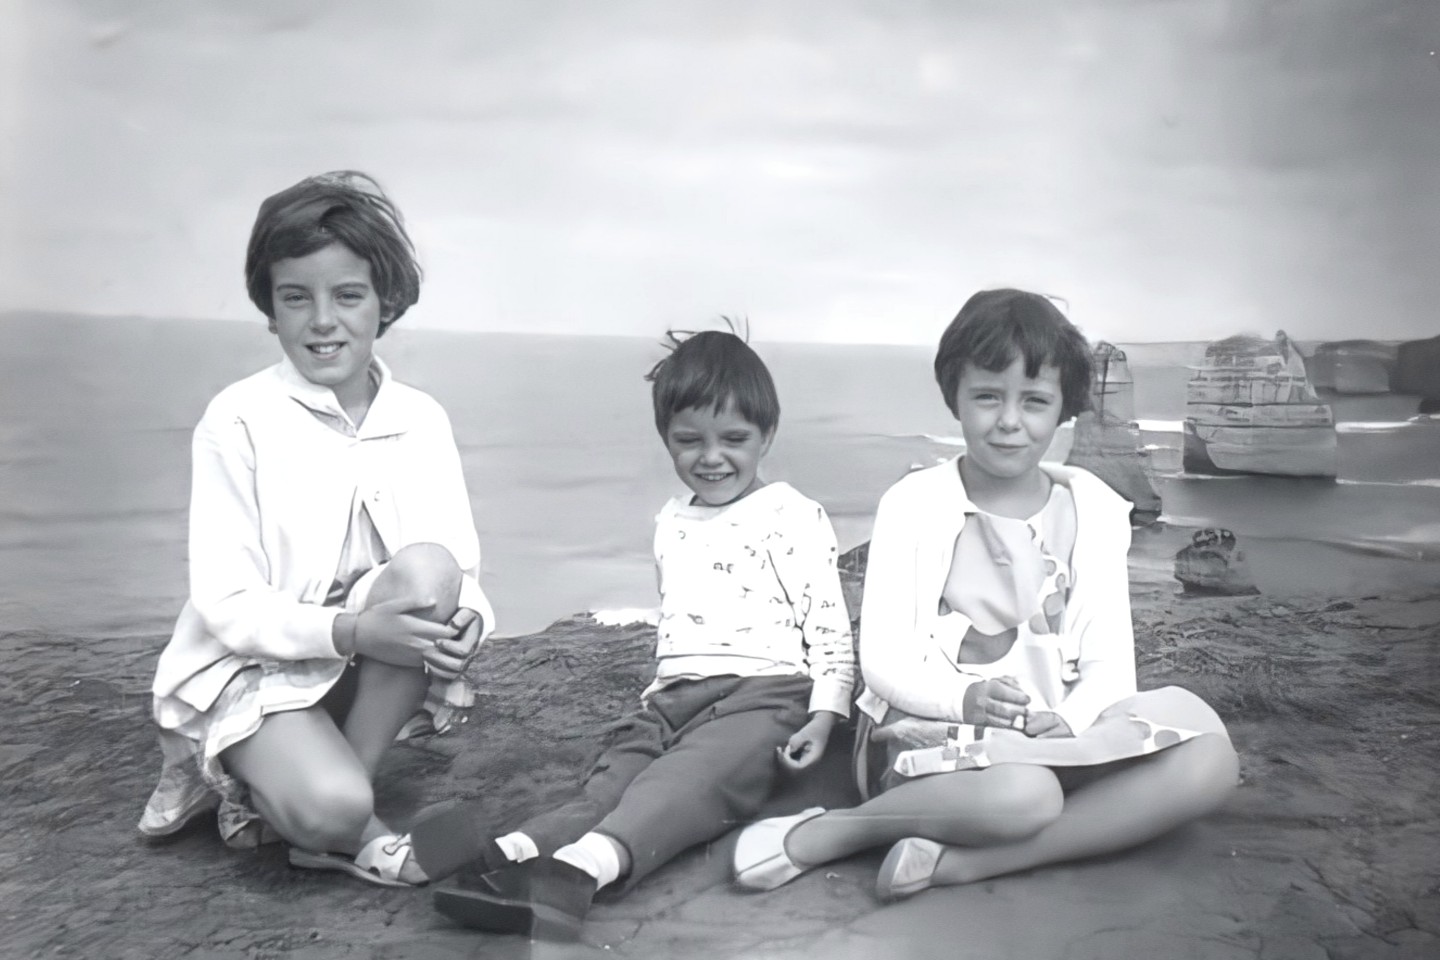 제인, 그랜트, 아르나 보몬트, 1965년 오스트레일리아 빅토리아 포트 캠벨 근처에 있는 십이사도 가족 여행 중 사진.